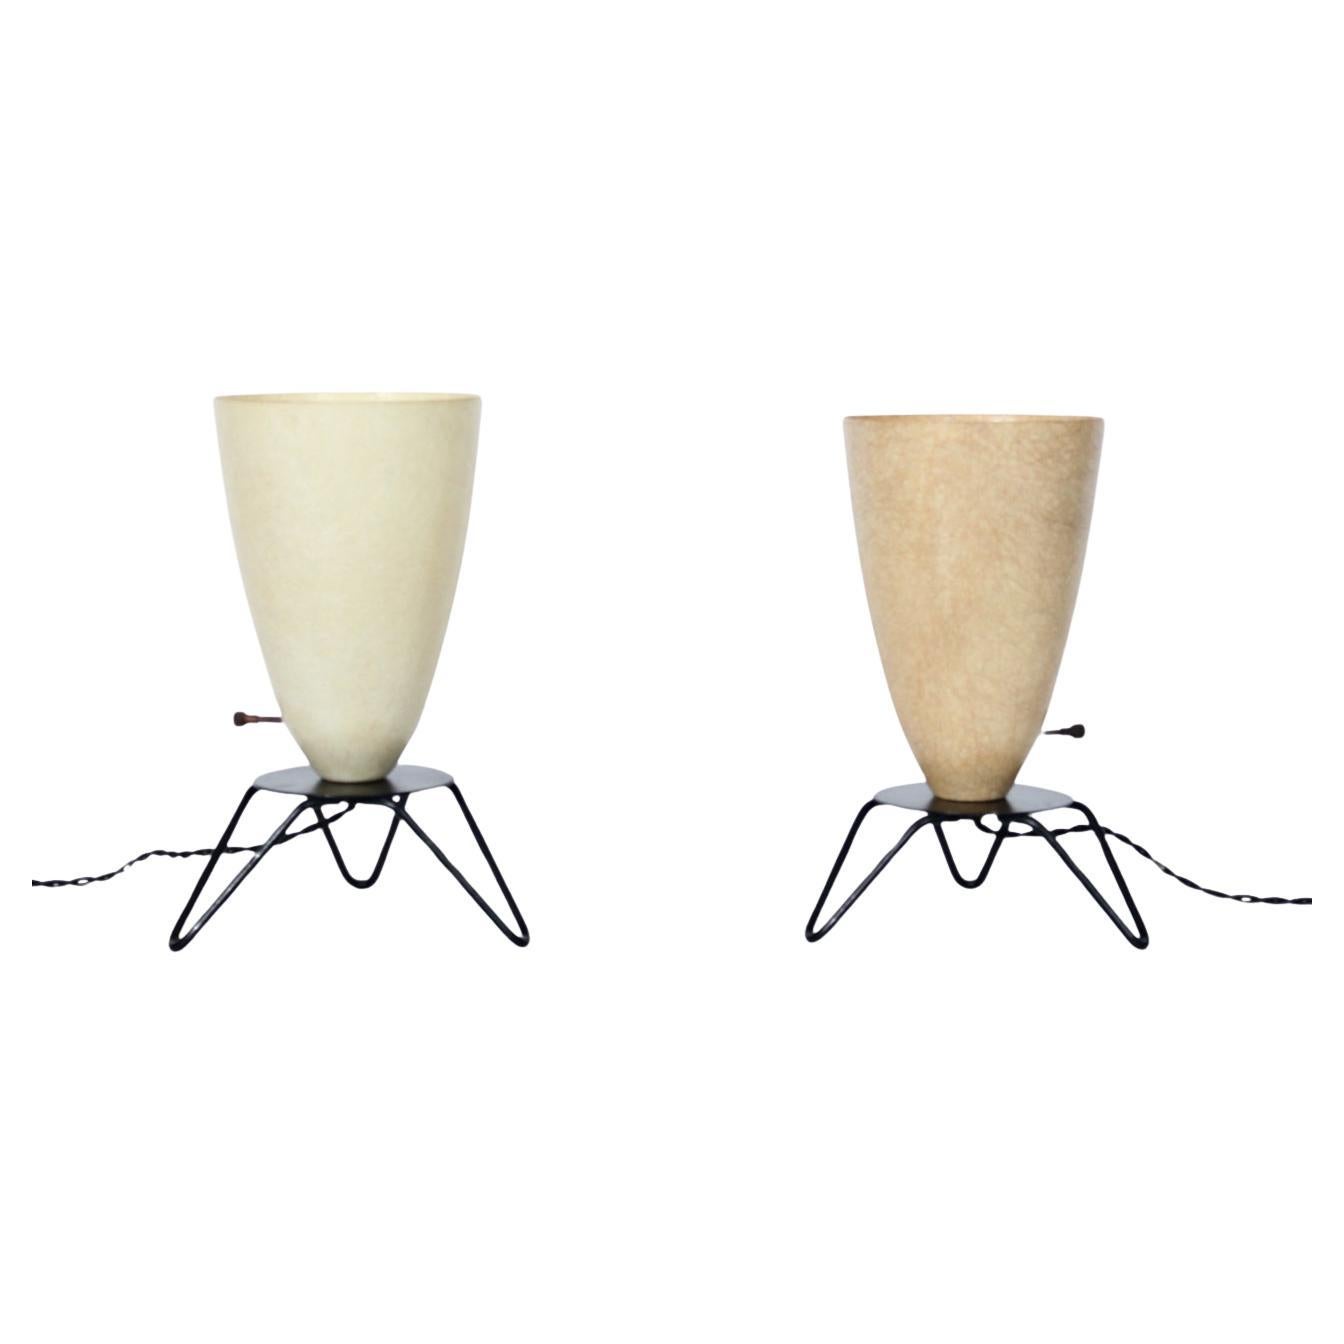 Deux abat-jour cône ivoire et café style Tony Paul avec bases en épingle à cheveux noire